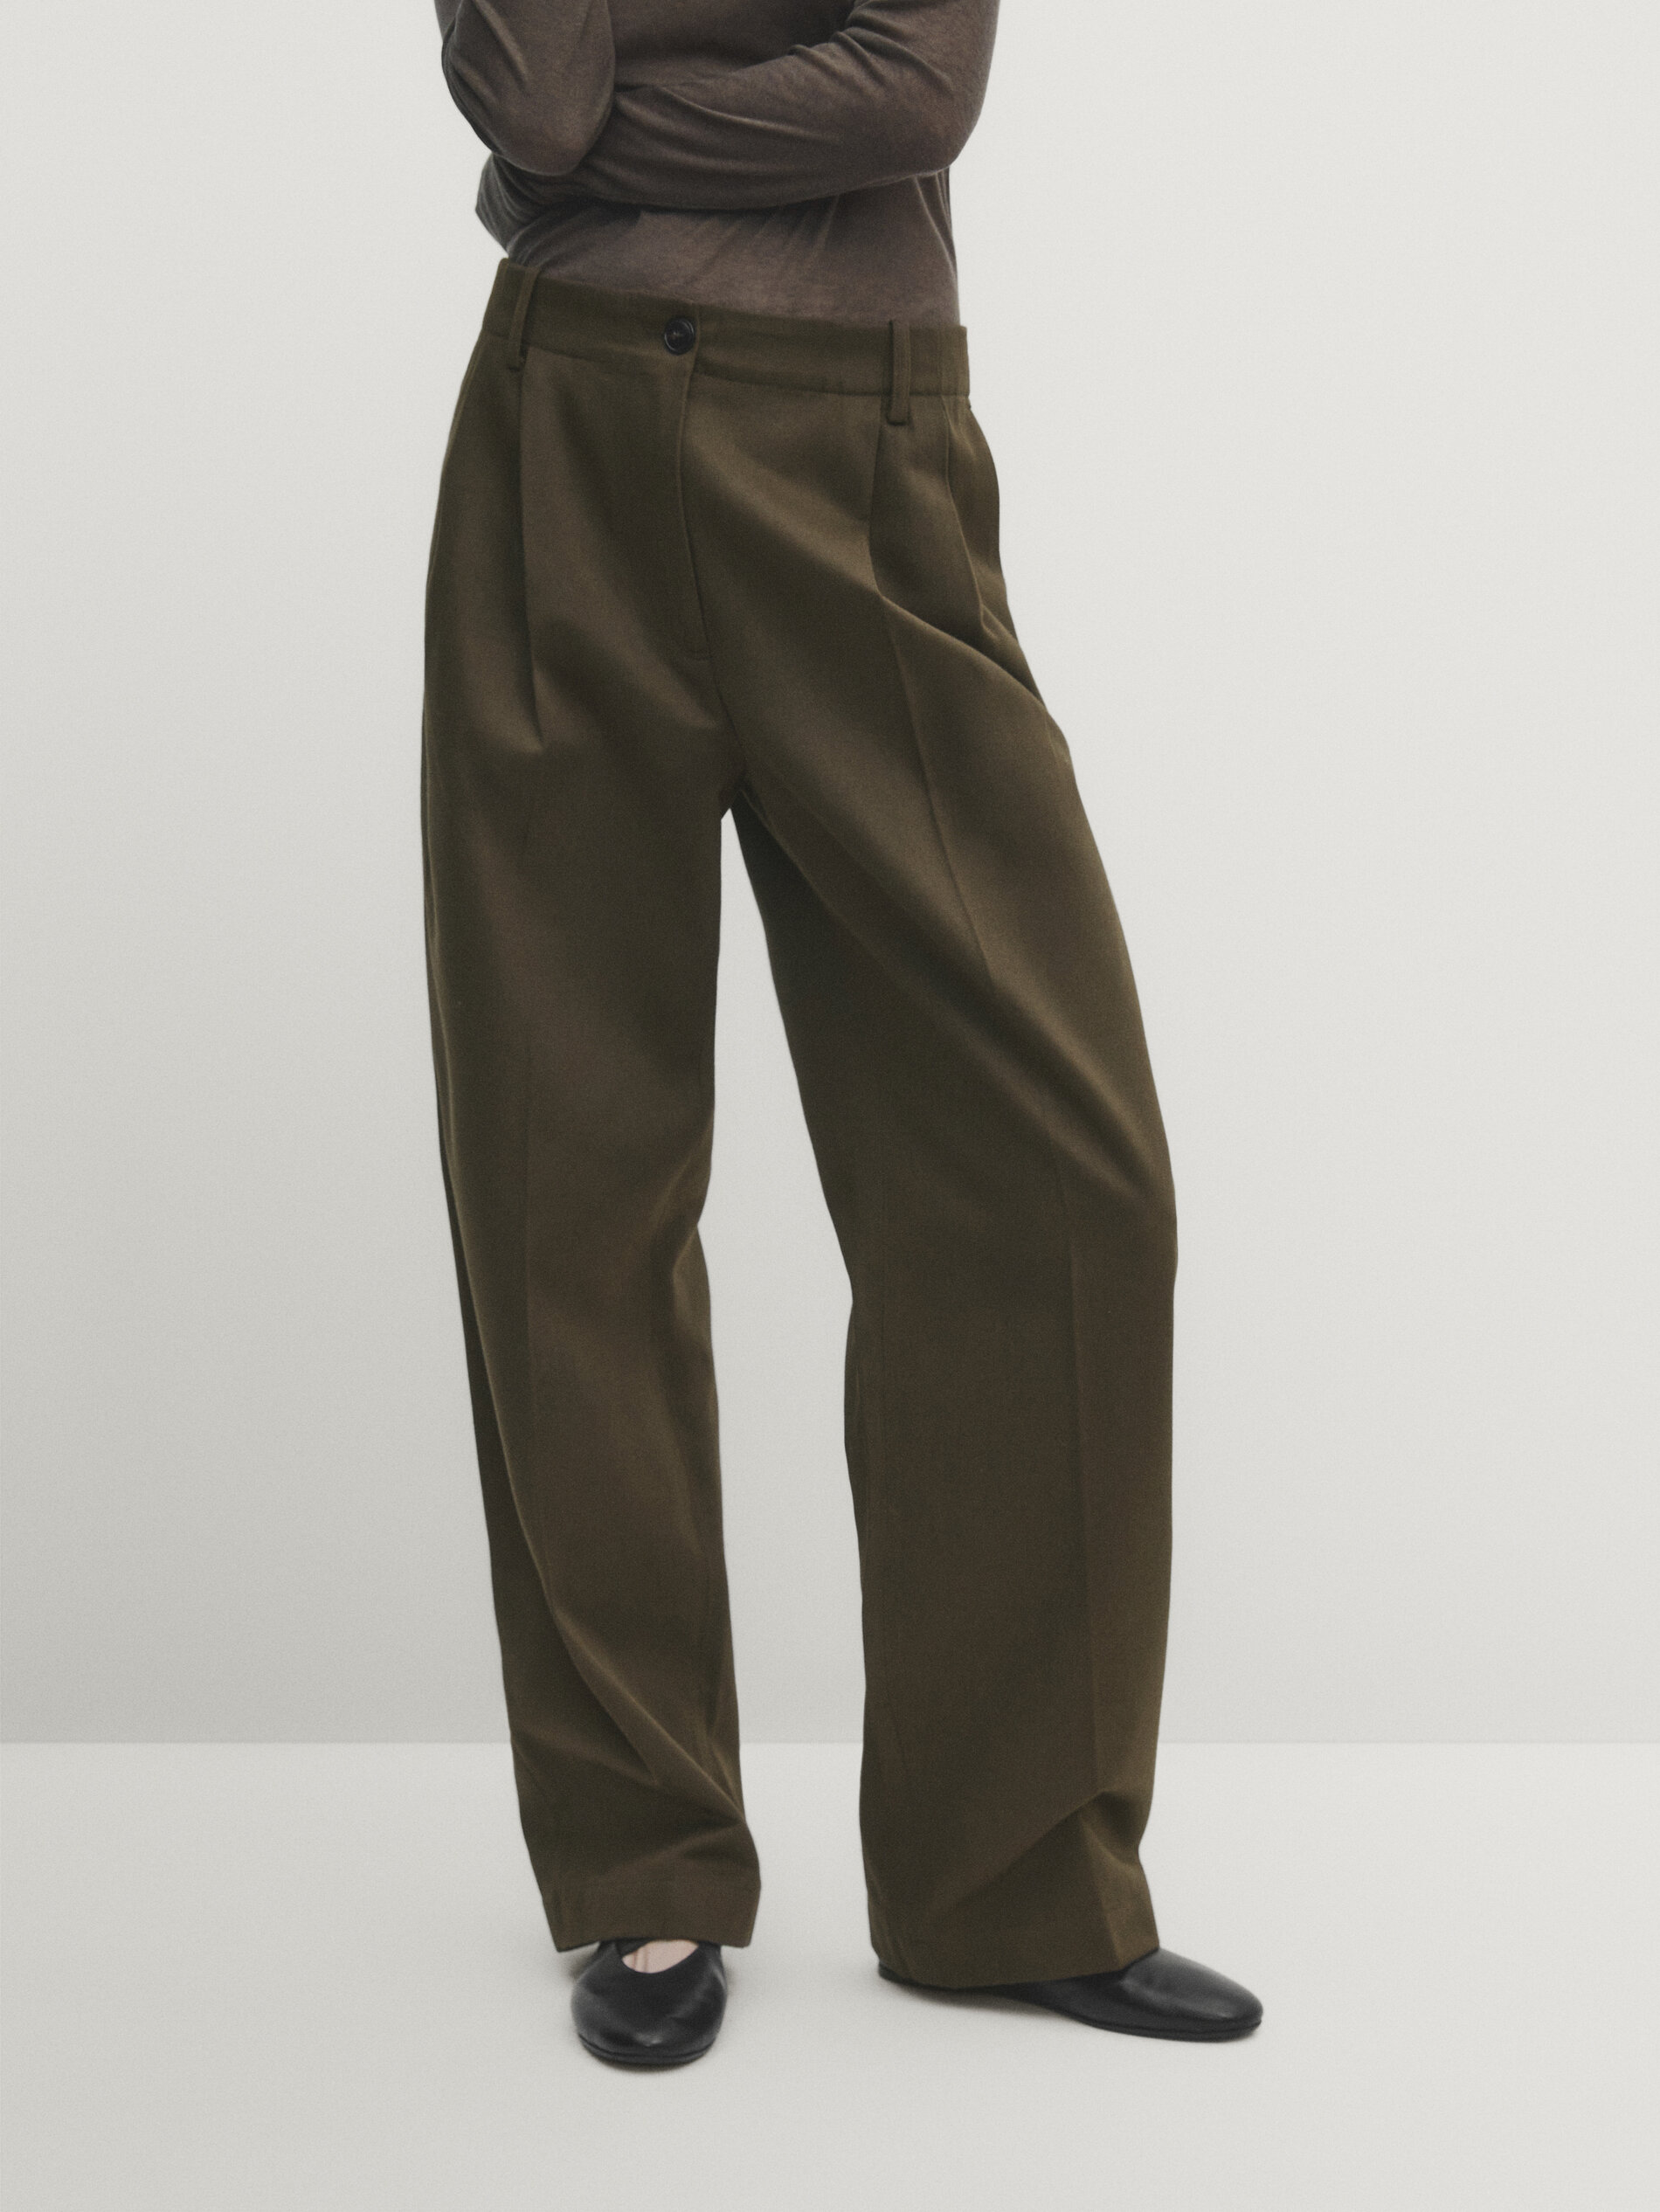 Massimo Dutti Trousers, UK Size 10 — The Cirkel